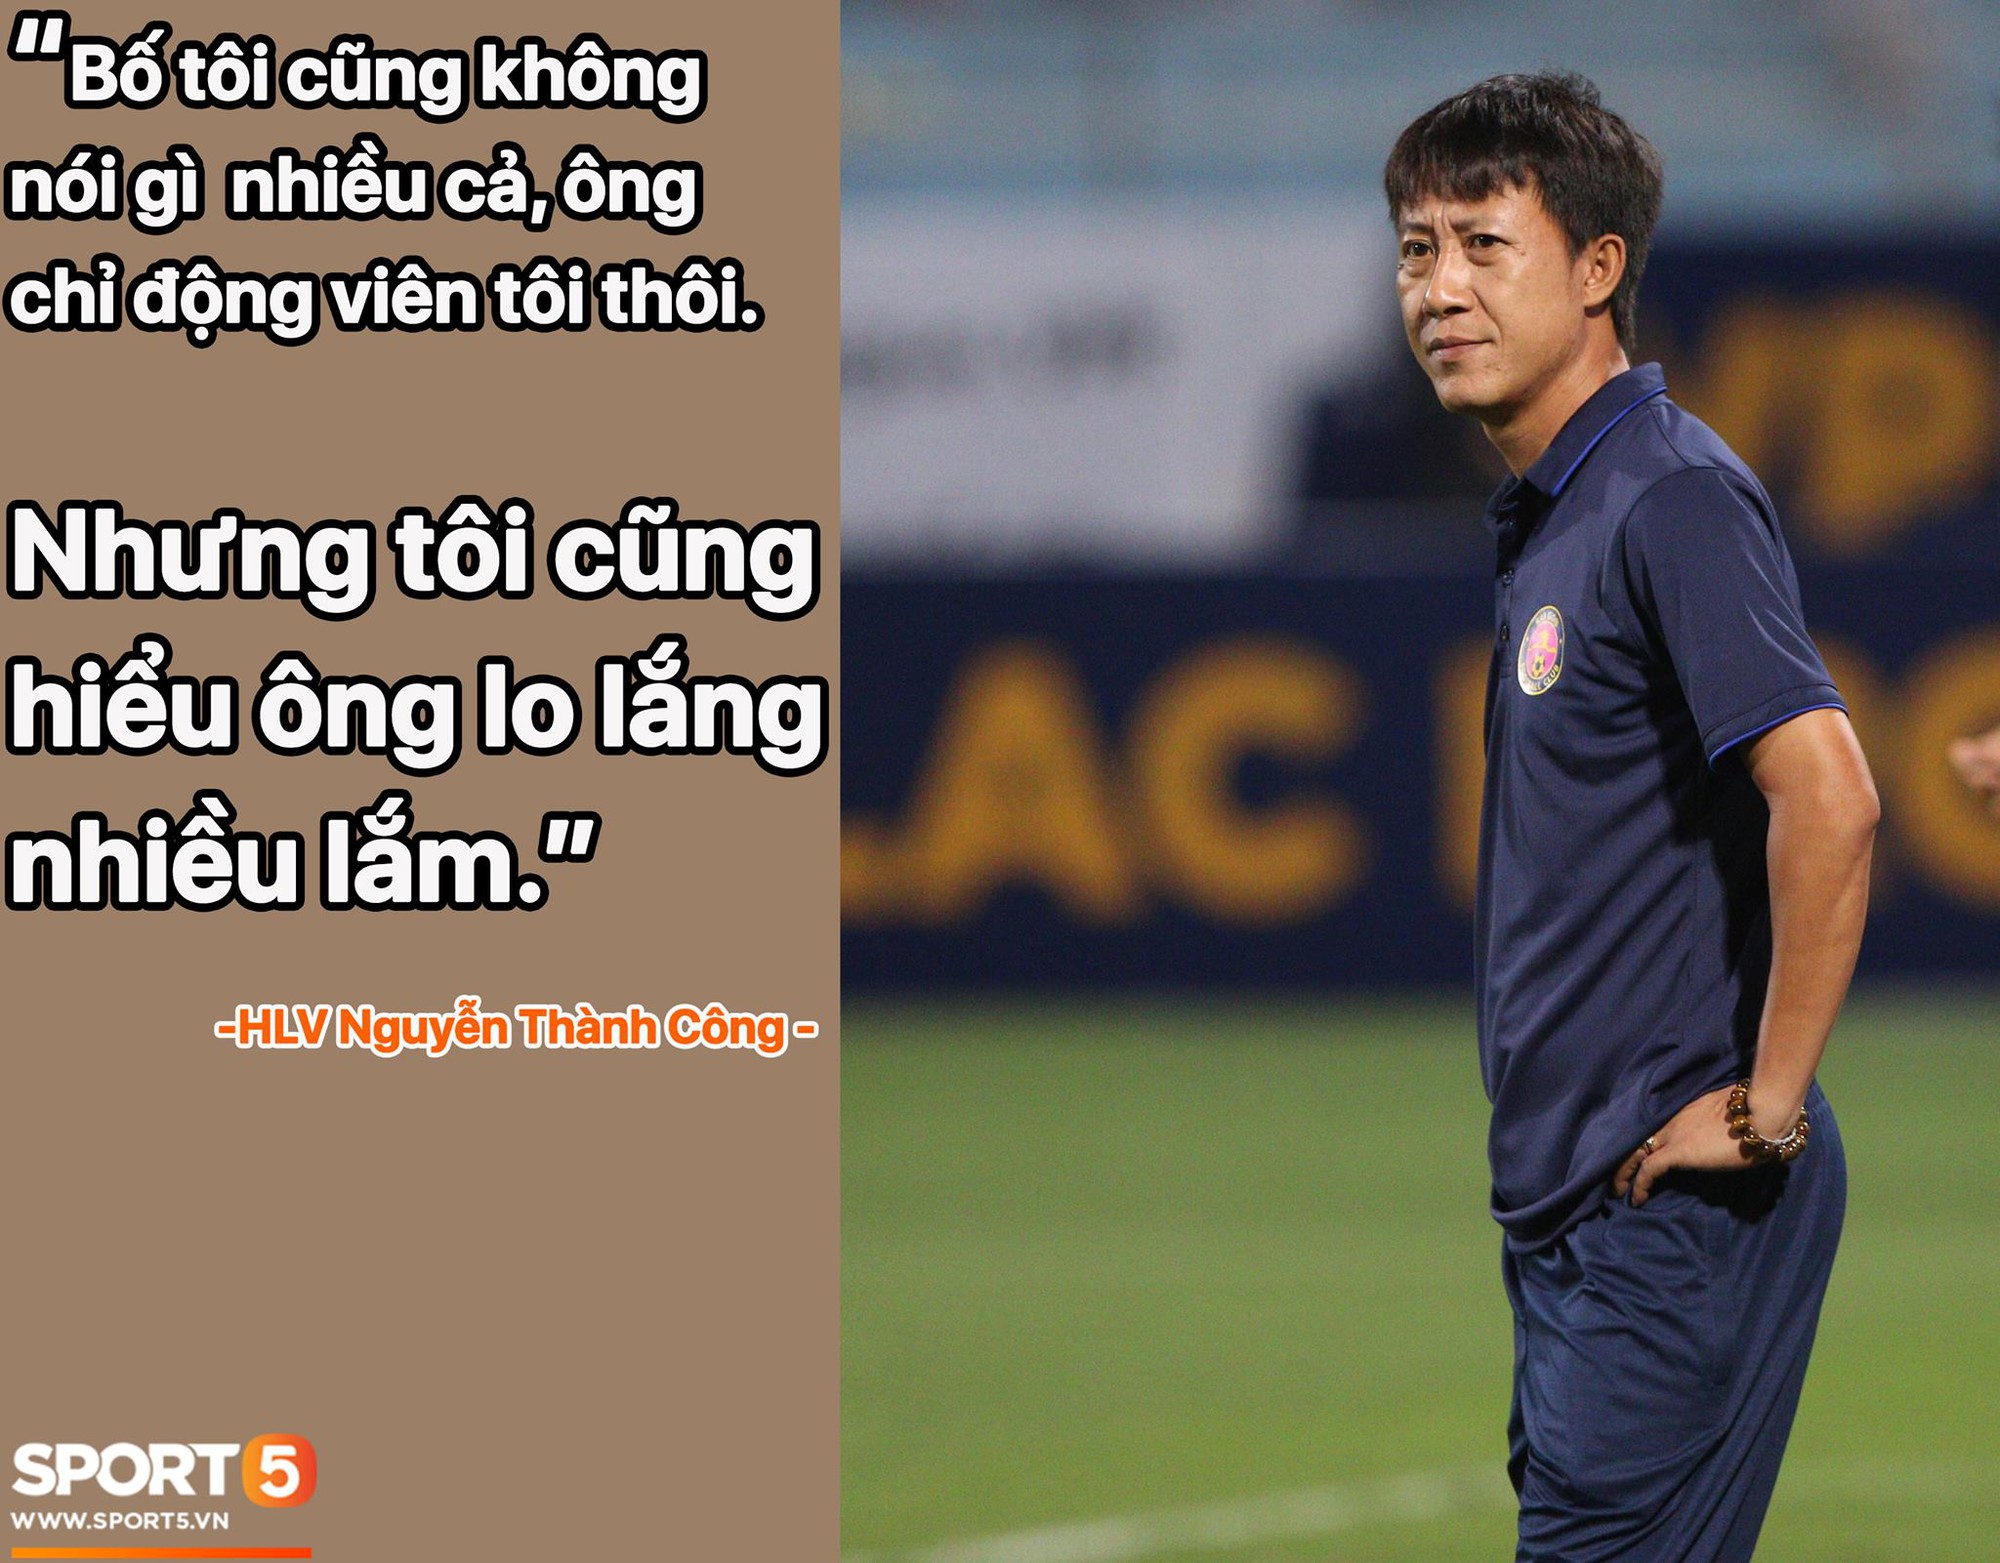 Tân HLV Sài Gòn FC: “Tôi không có thời gian để nghĩ đến cảm xúc của bản thân” - Ảnh 1.